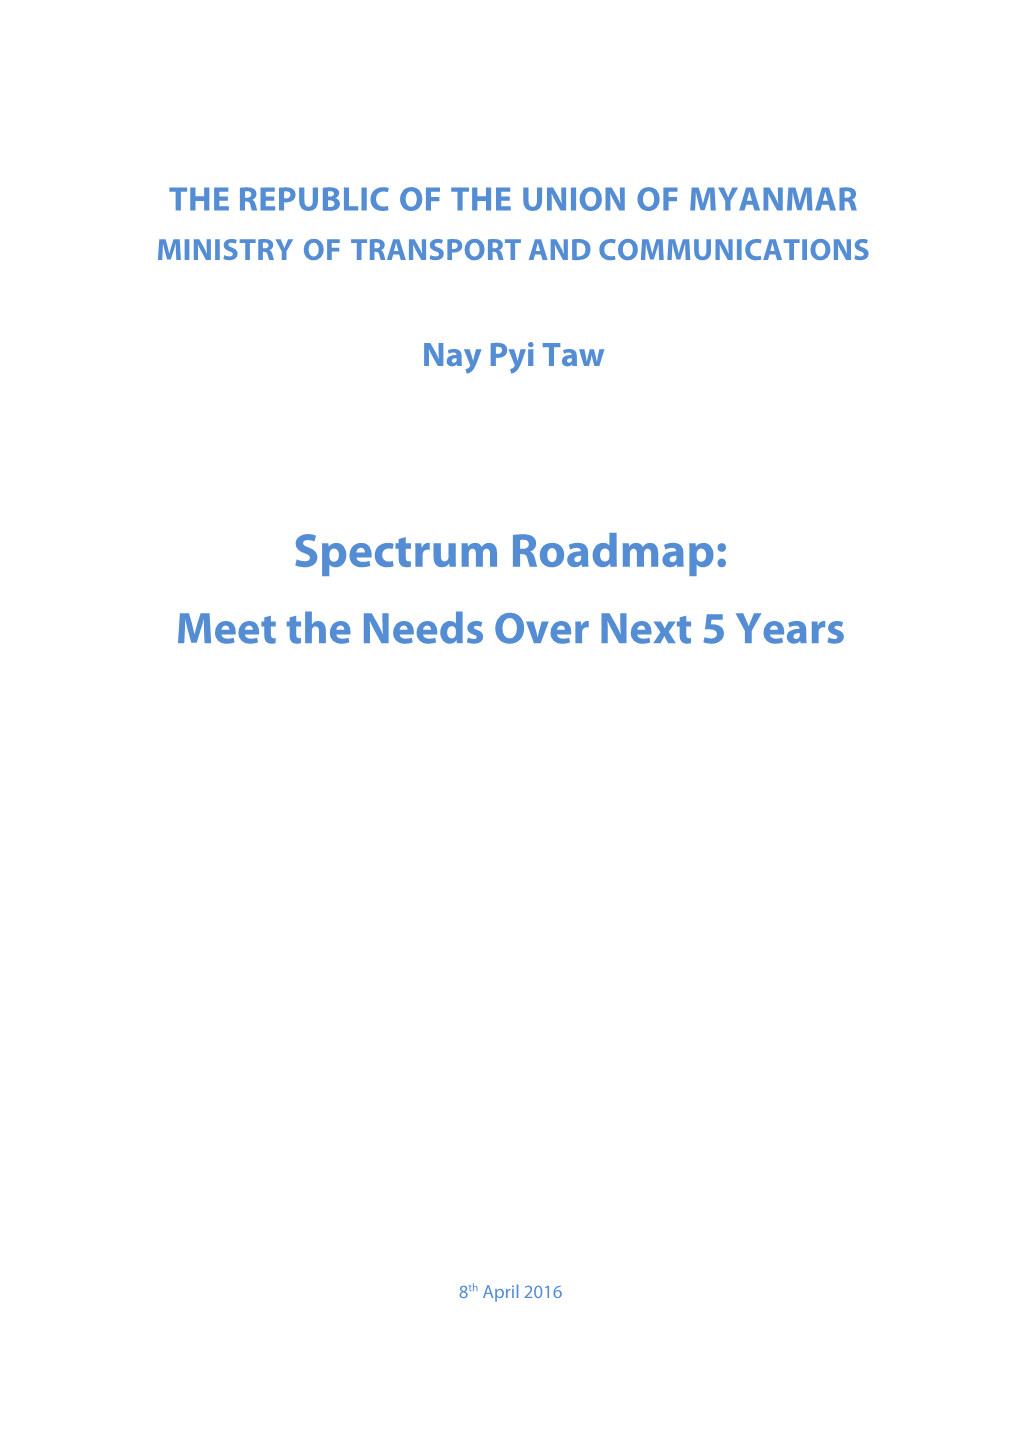 Spectrum Roadmap: Meet the Needs Over Next 5 Years